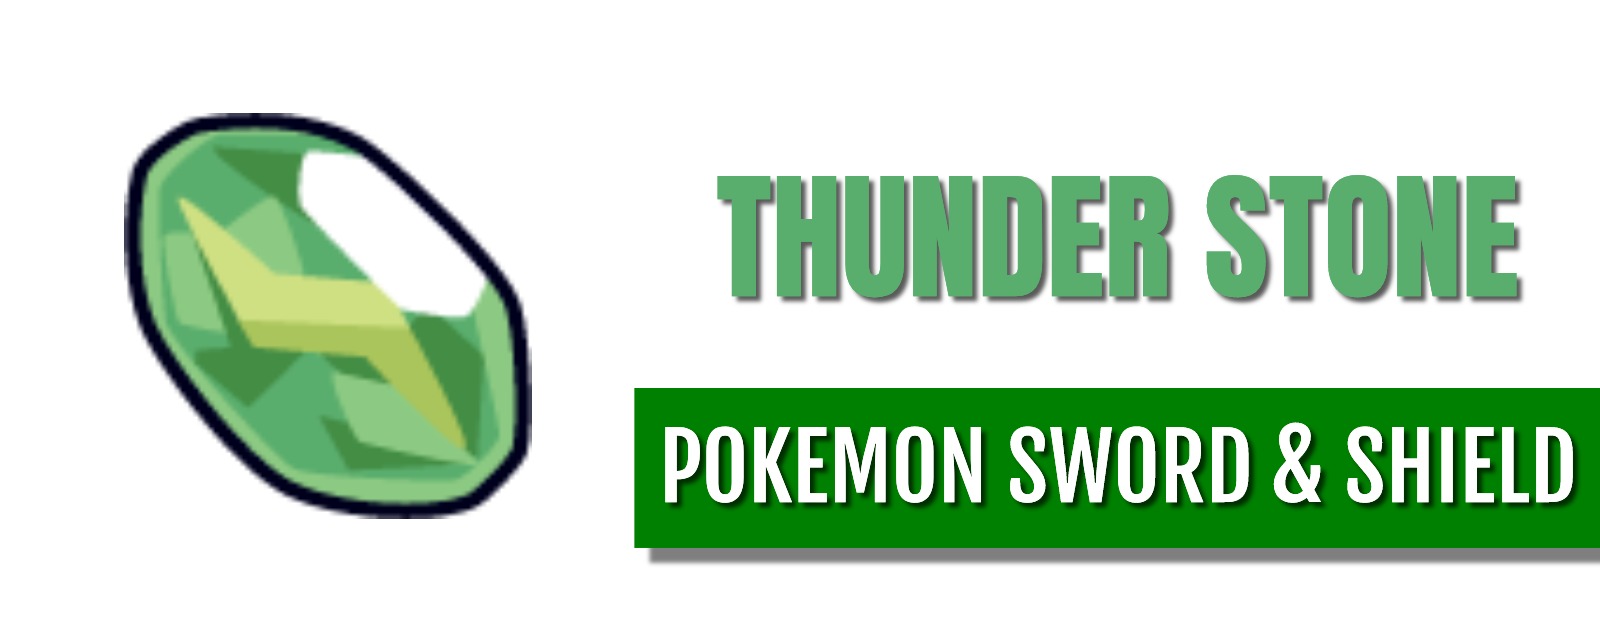 Thunder stone pokemon sword and shield